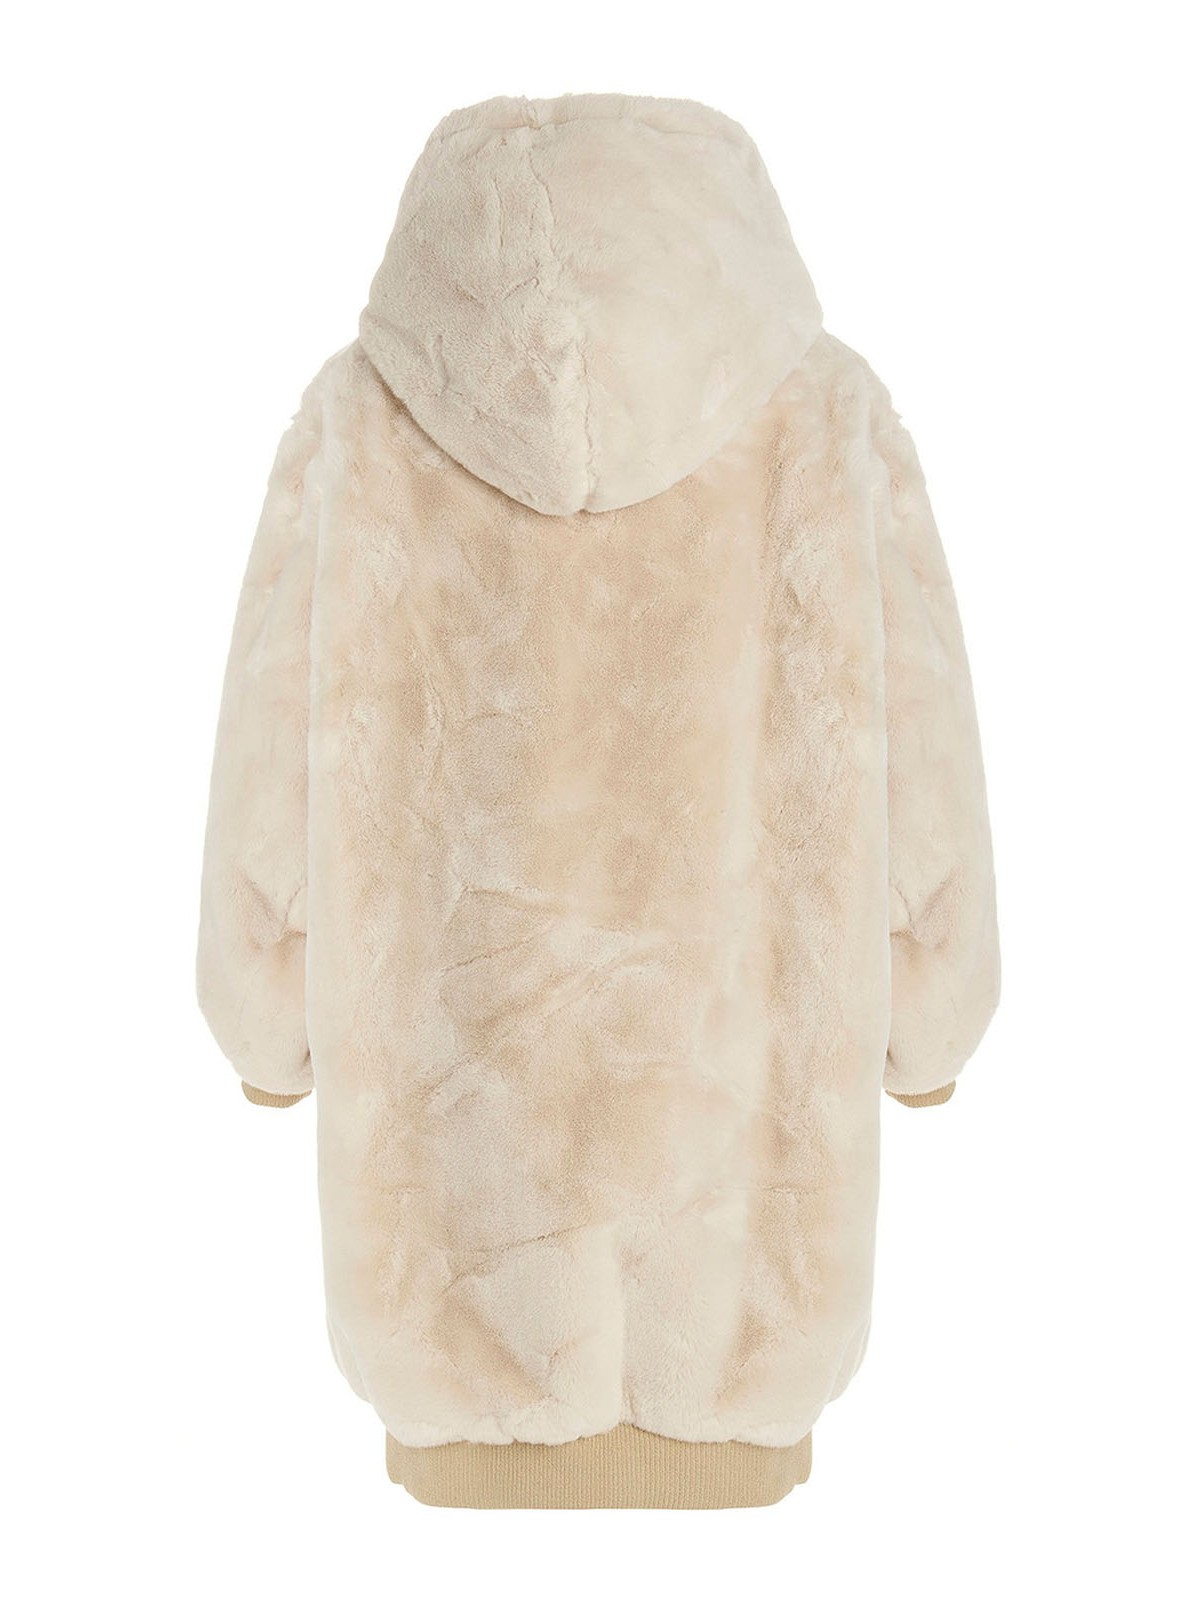 & Shearling R13 - Eco hooded coat - R13WR096R155AR155A